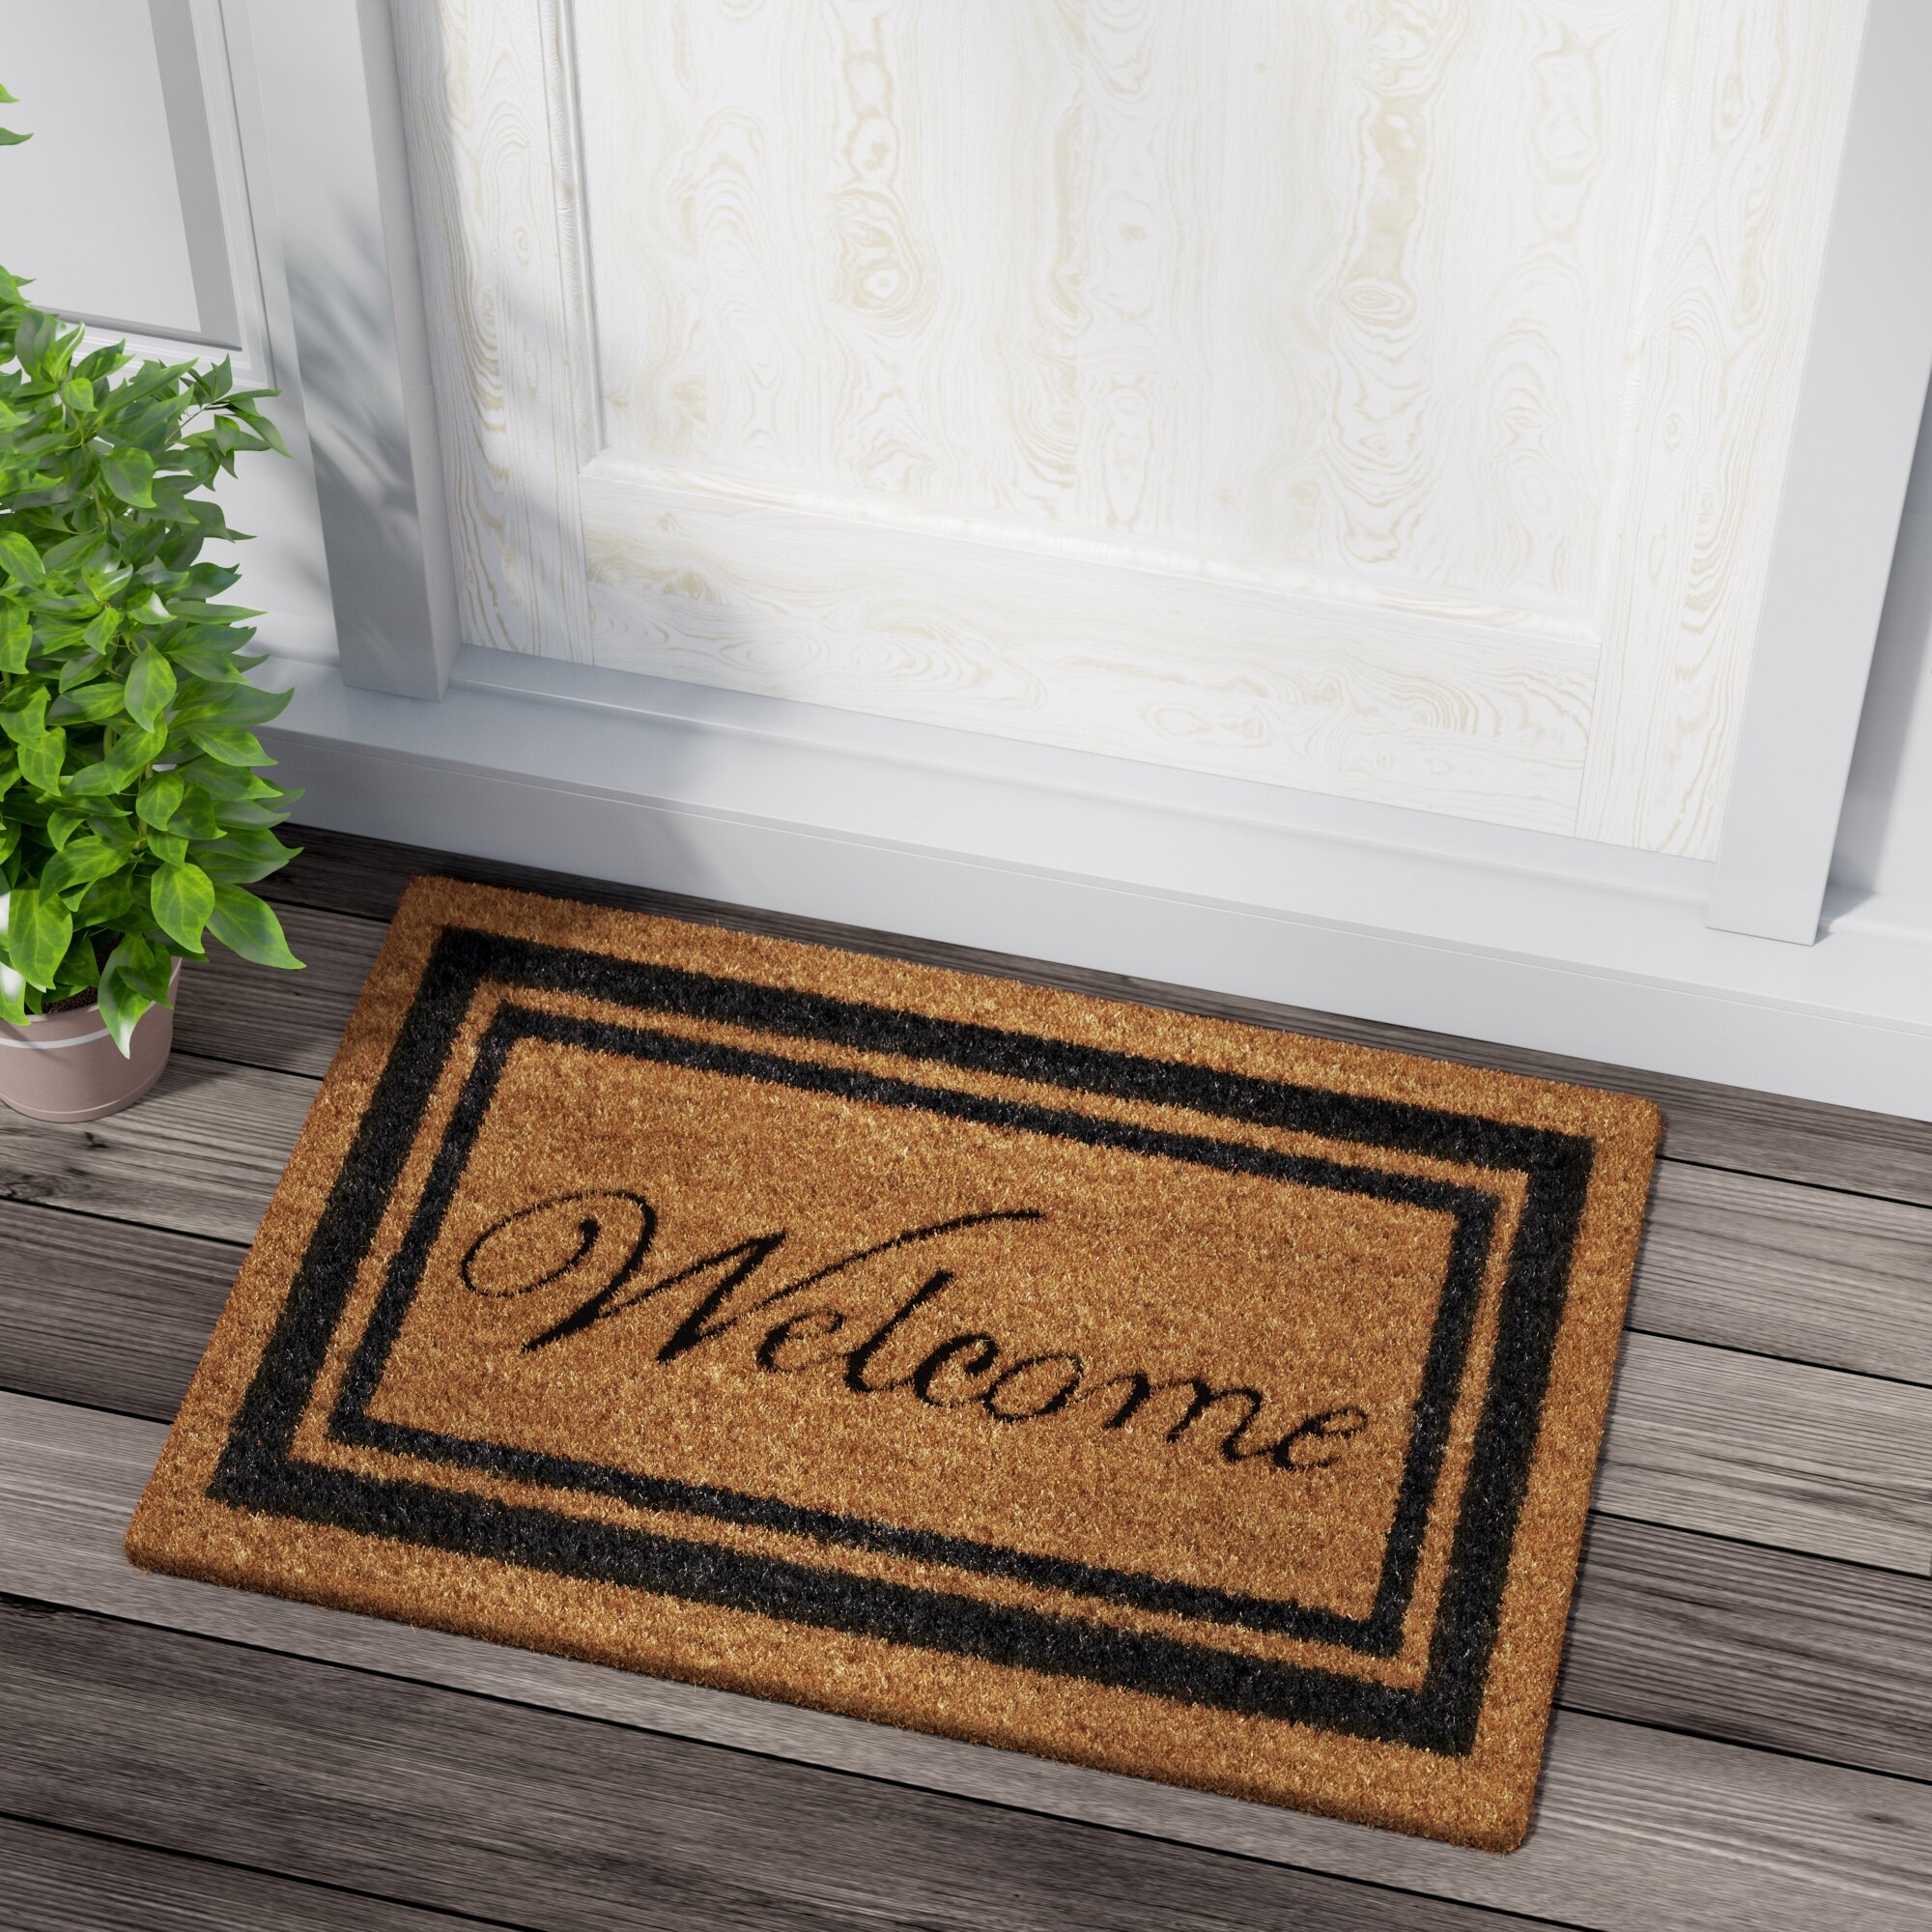 Tdou Sup Doormat Welcome Doormat Floor Entrance Outdoor & Indoor Decor Rug Rubber Non Slip Doormat 23.6 X 15.7 inches